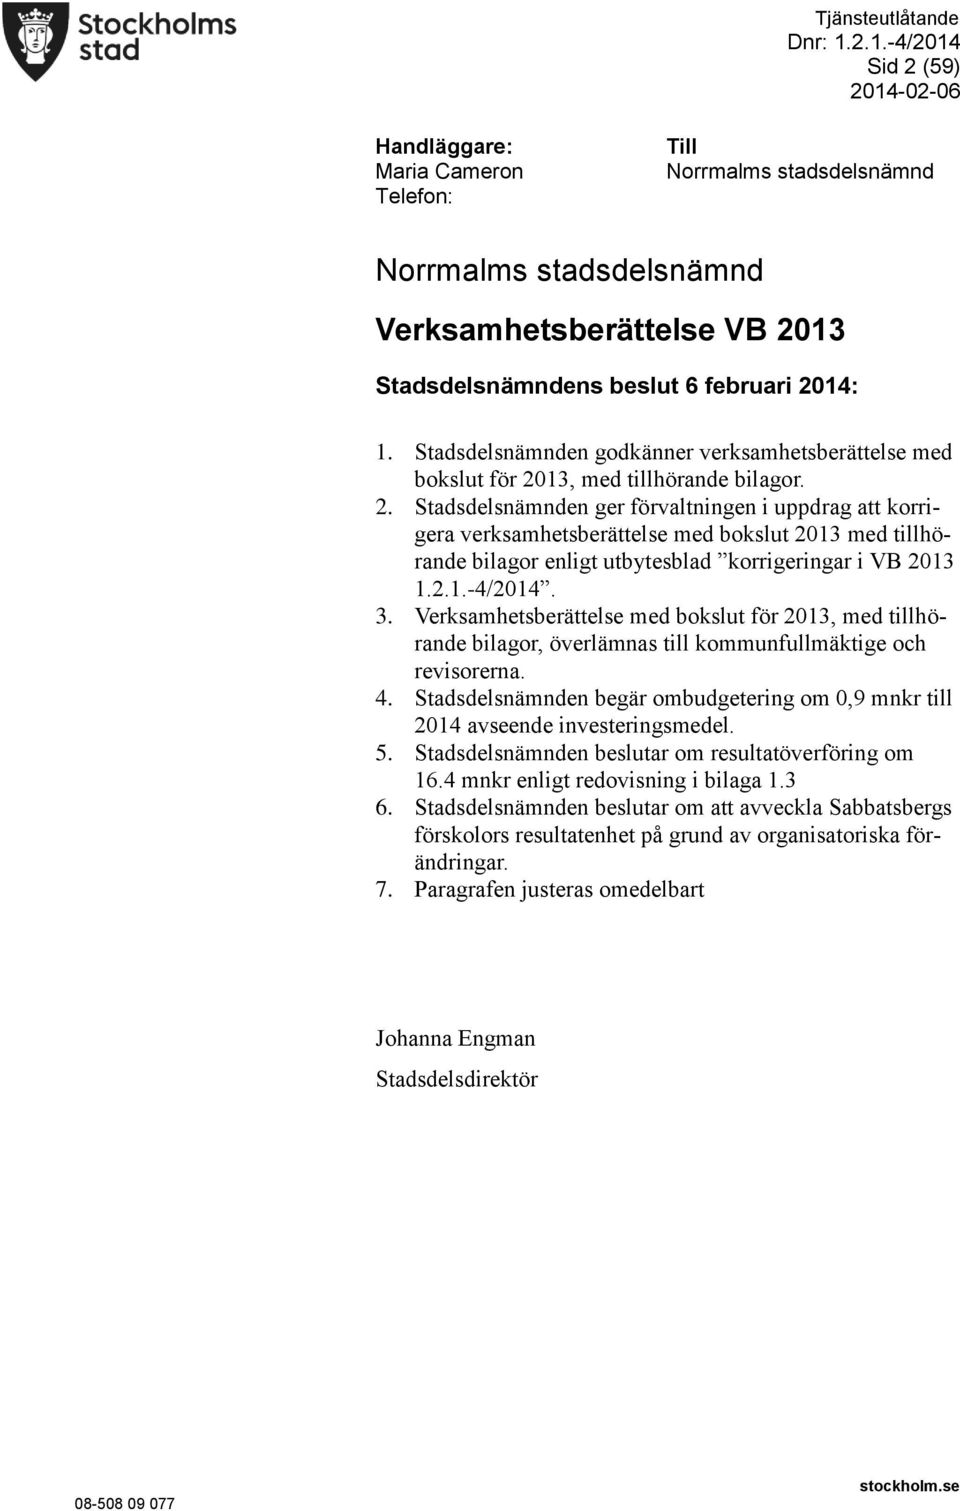 13, med tillhörande bilagor. 2. Stadsdelsnämnden ger förvaltningen i uppdrag att korrigera verksamhetsberättelse med bokslut 2013 med tillhörande bilagor enligt utbytesblad korrigeringar i VB 2013 1.